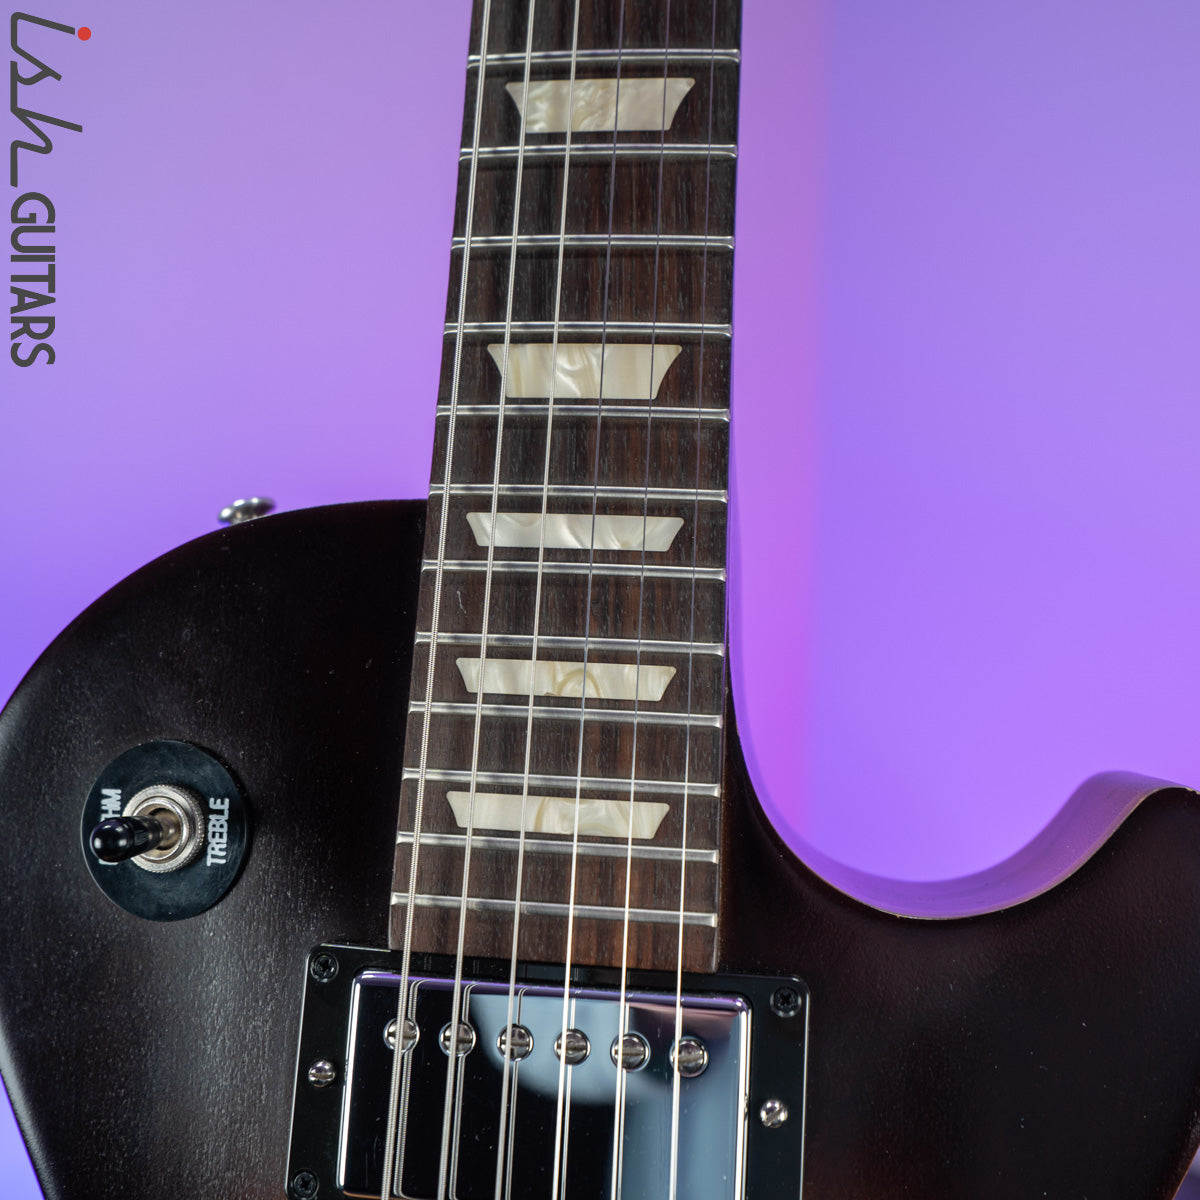 2013 Gibson Les Paul Studio 60's Tribute – Ish Guitars